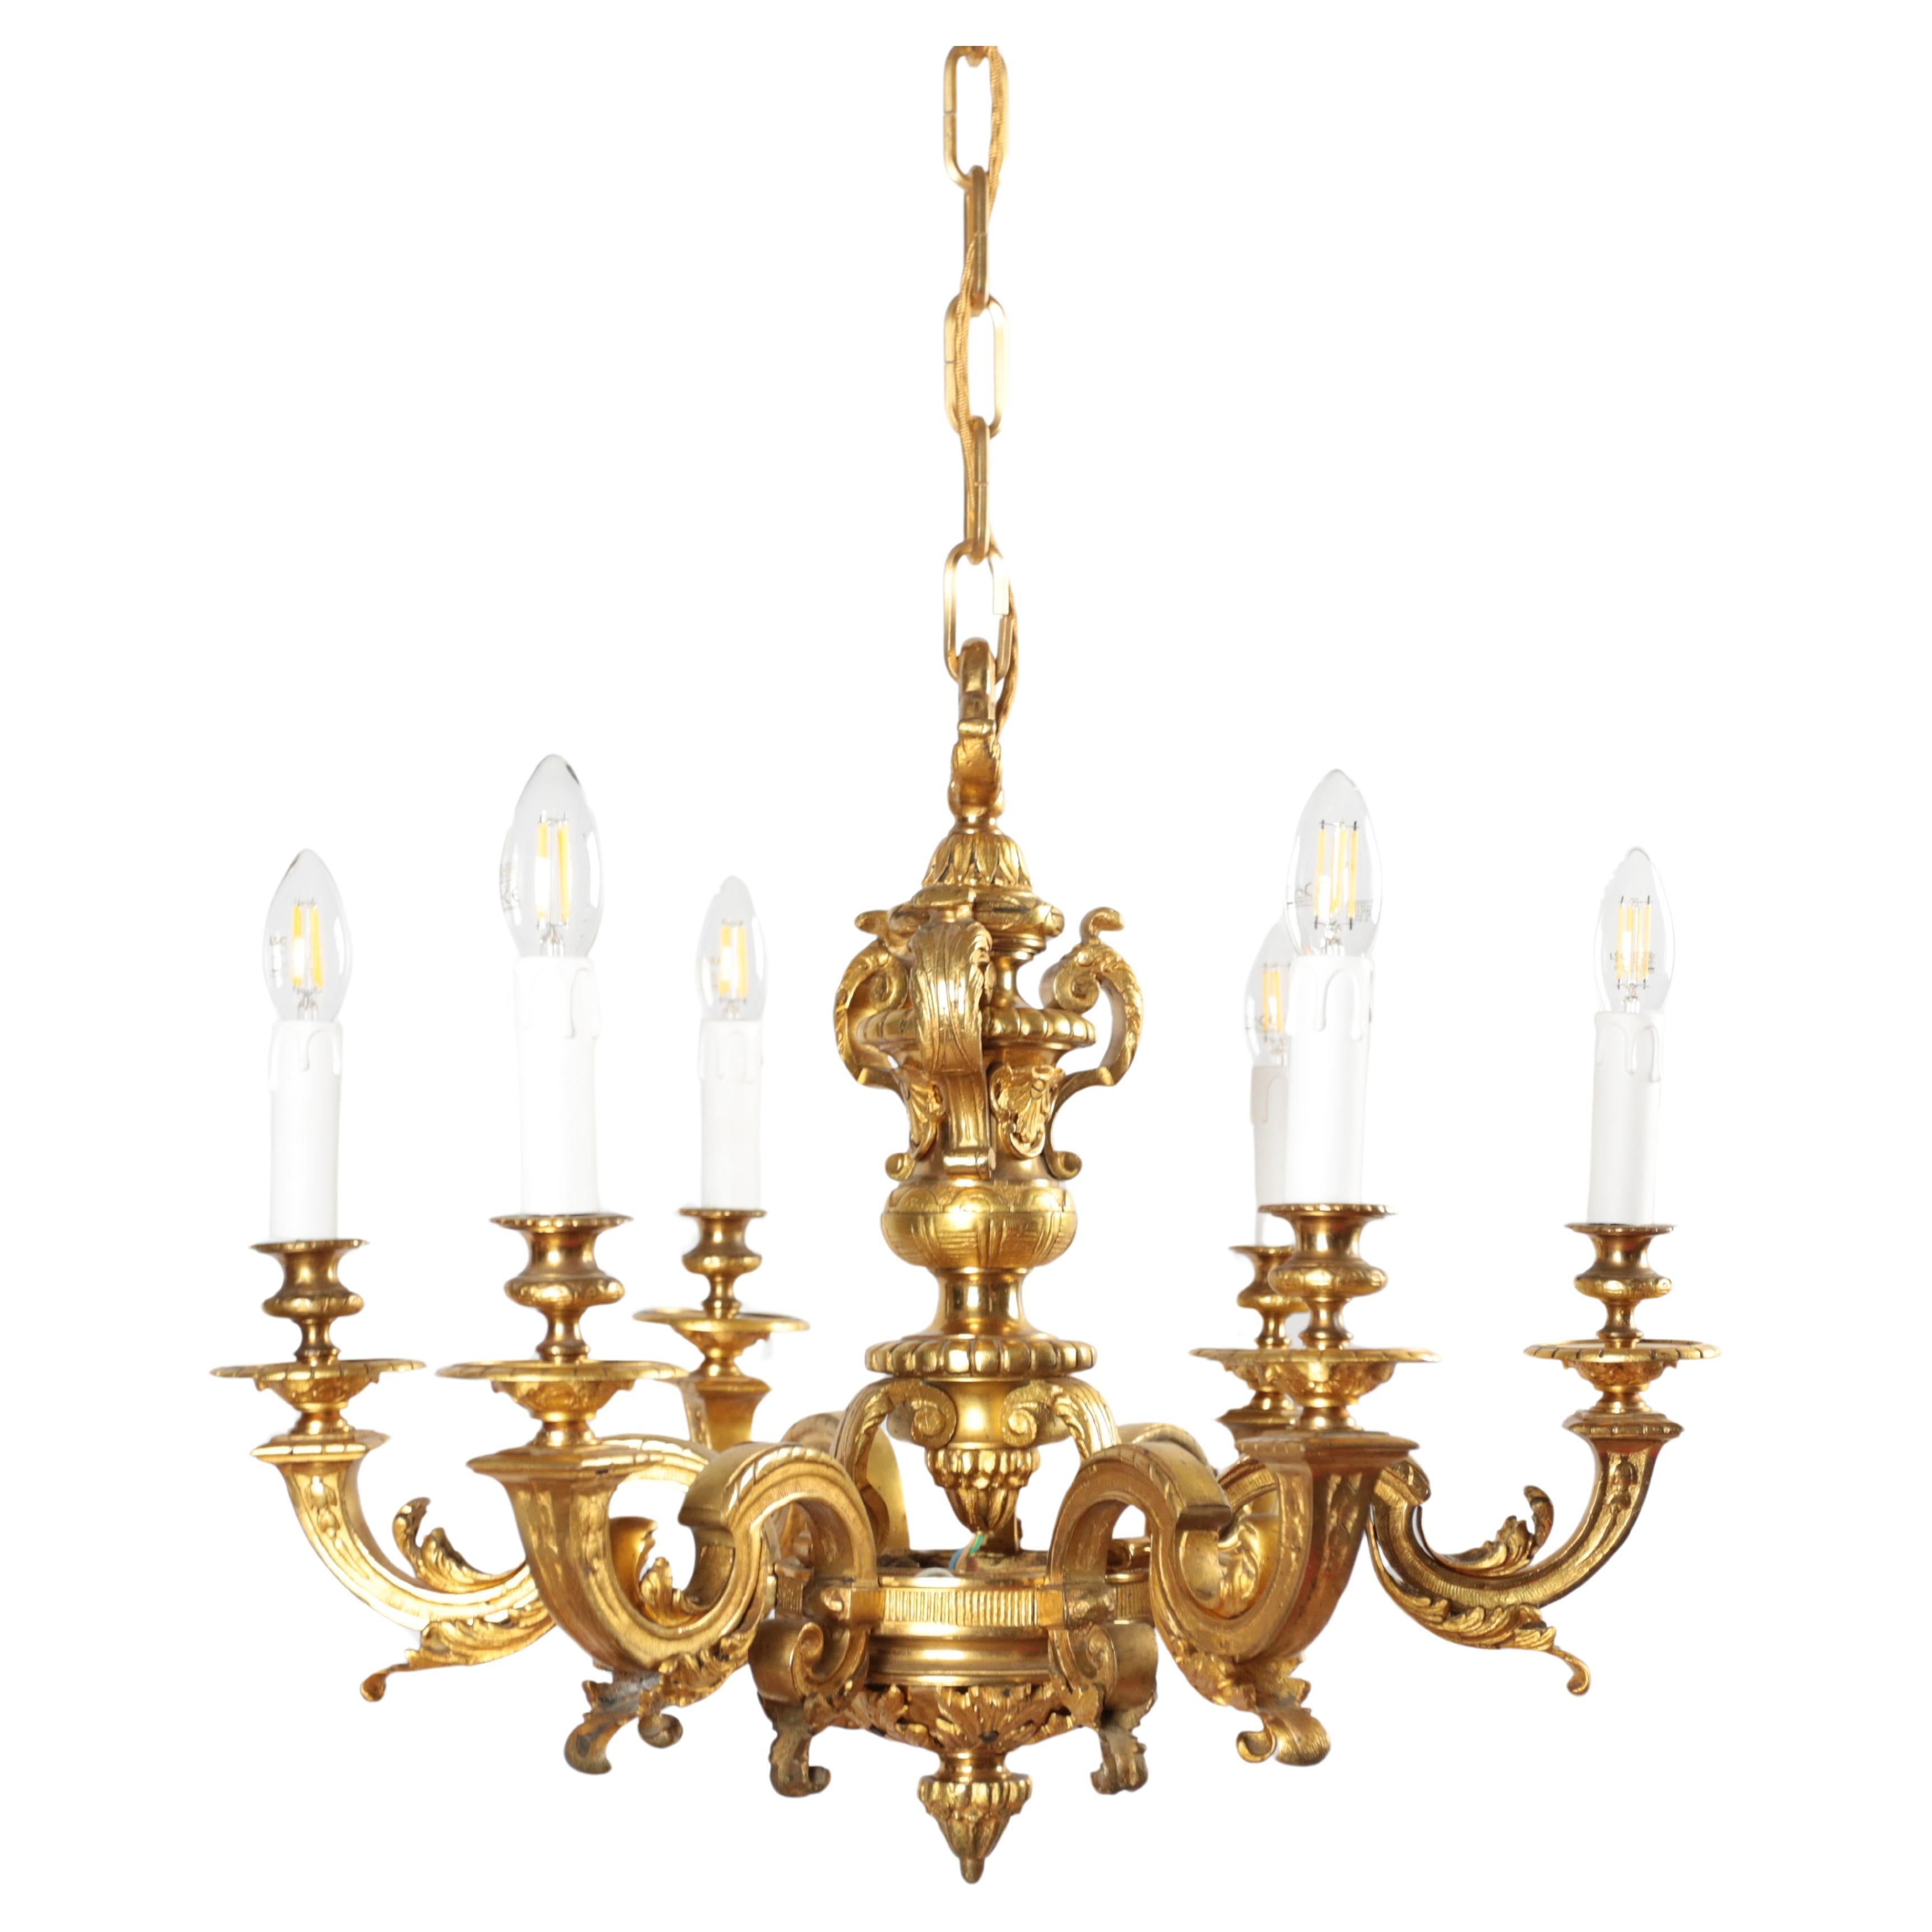 Antique Mazarin gilt bronze chandelier